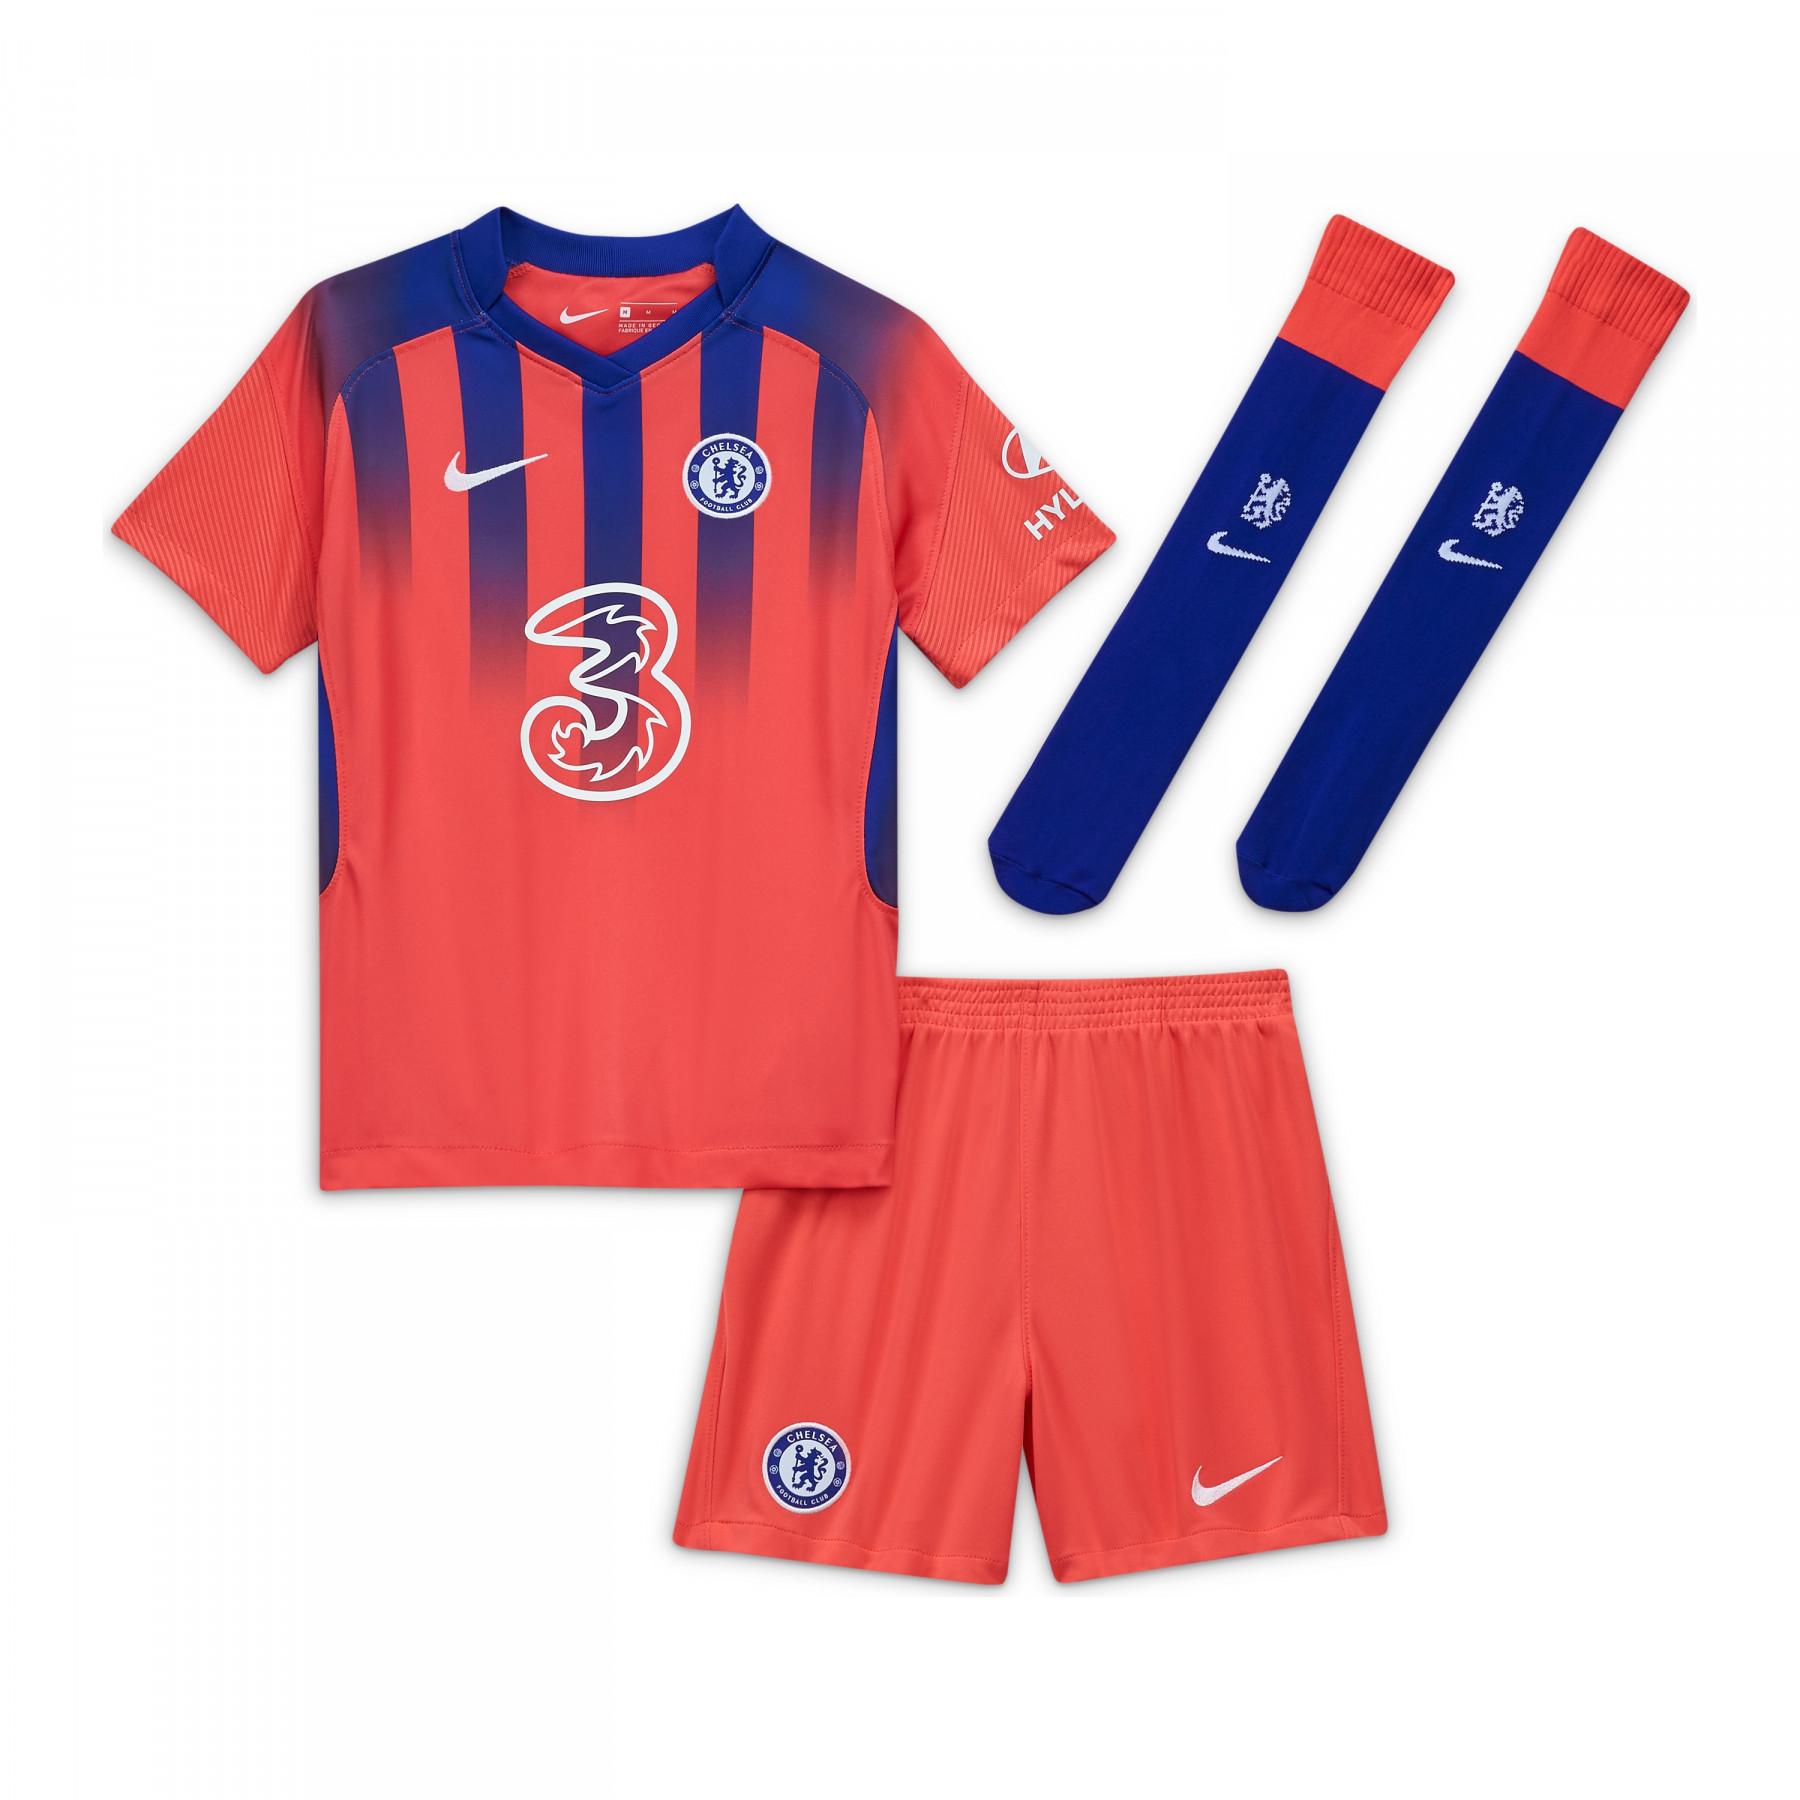 Mini kit kid tredje Chelsea andas 2020/21